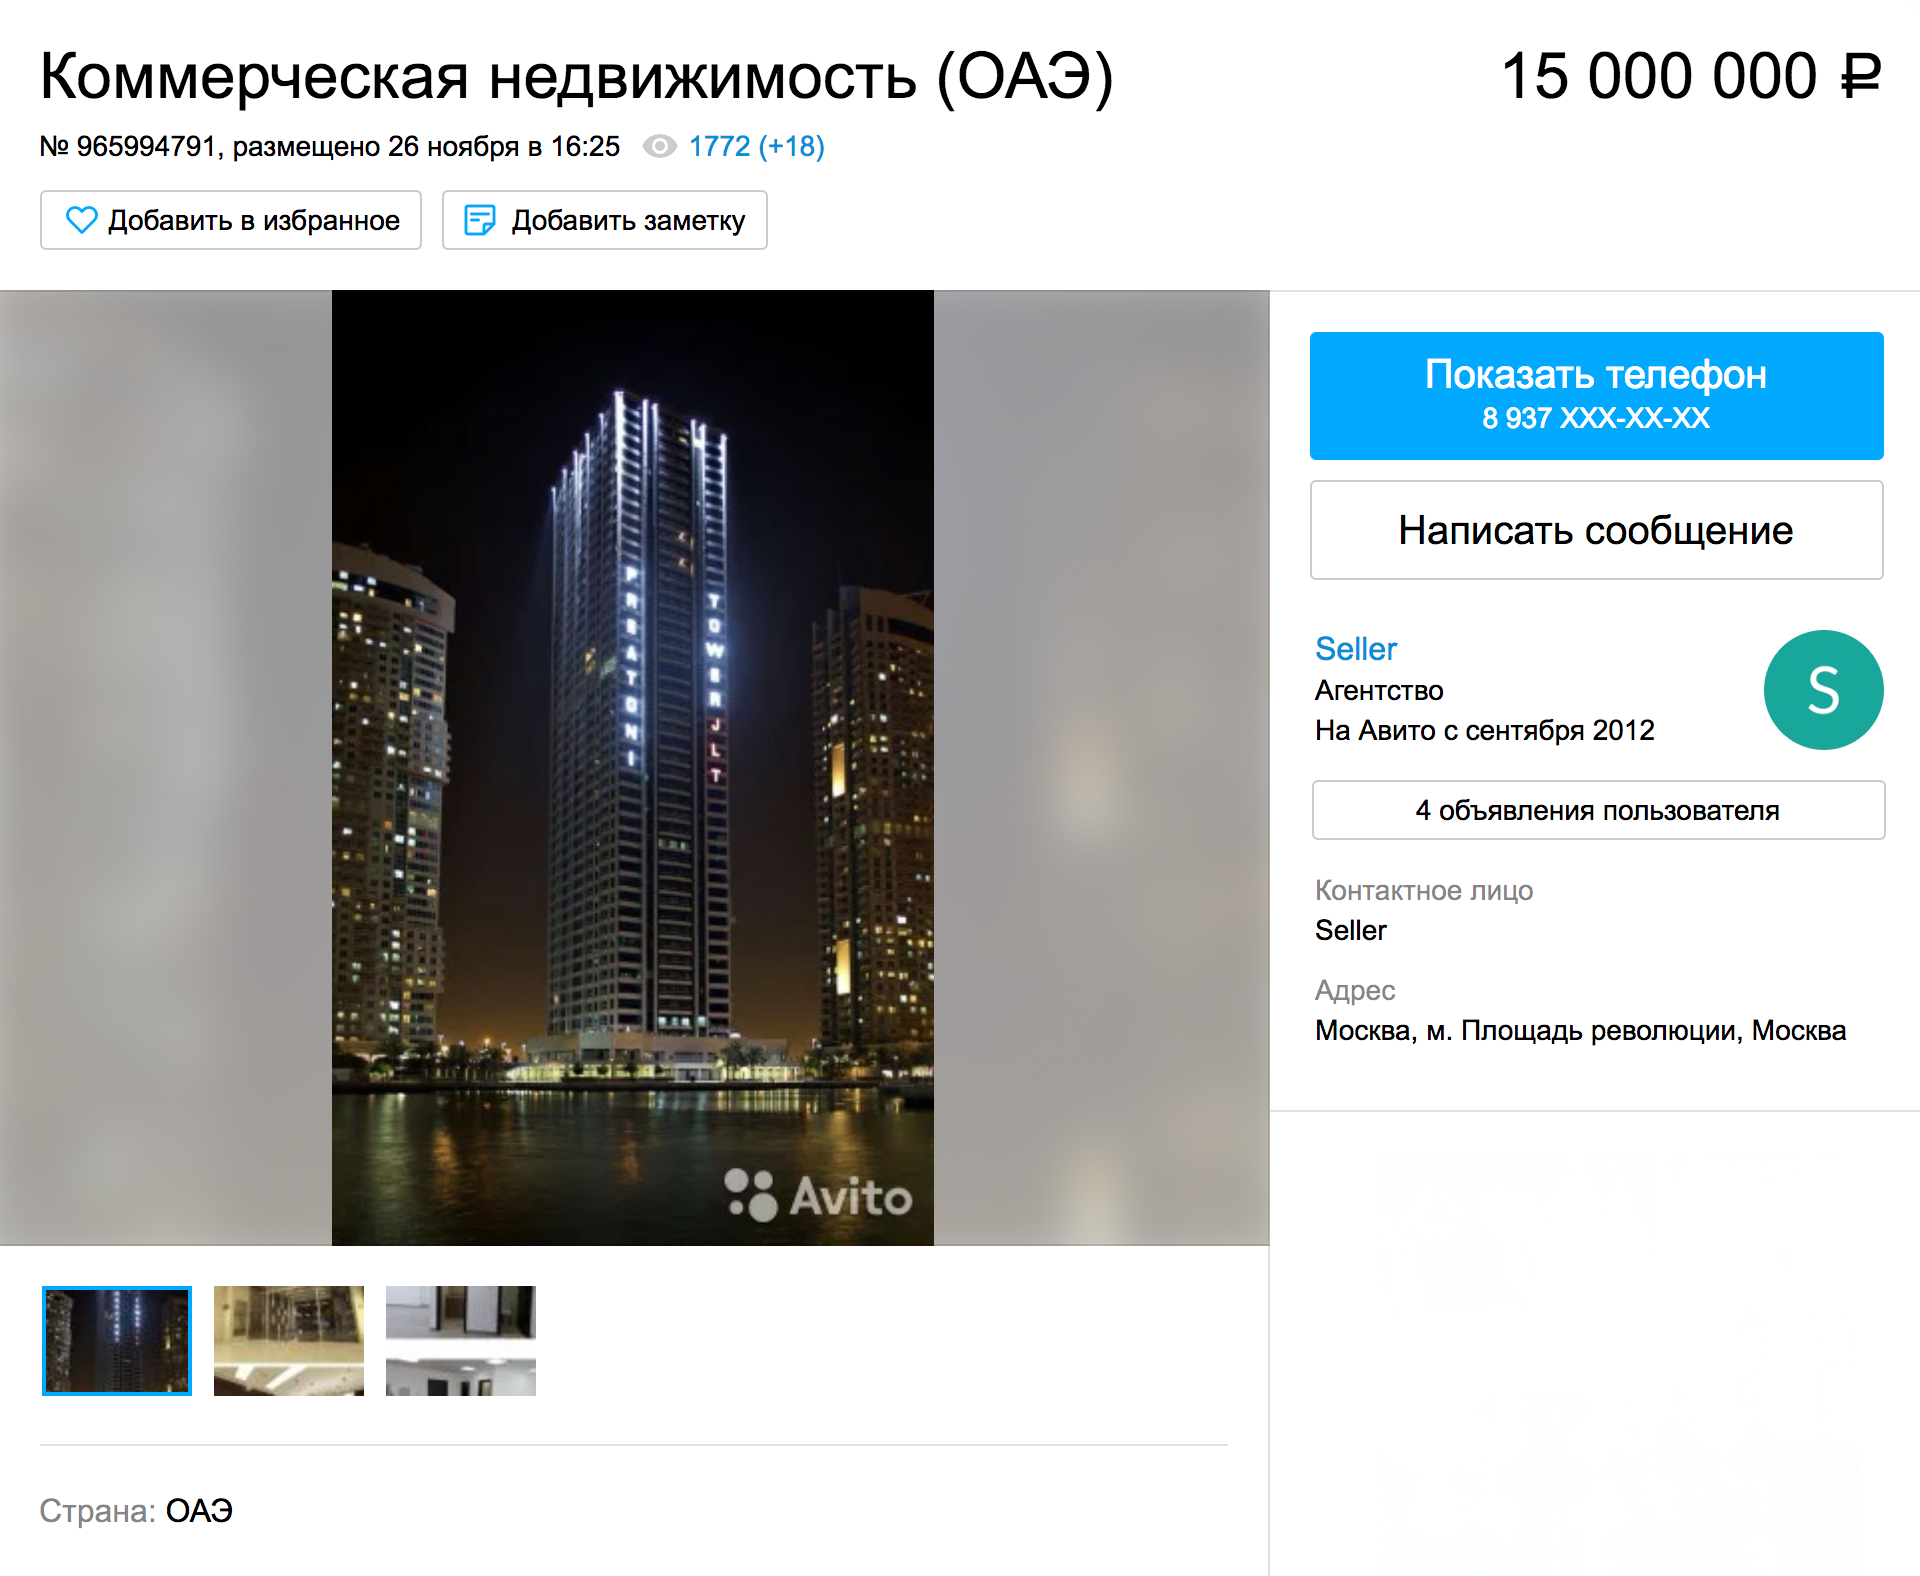 Этаж в дубайском небоскребе с видом на залив за 15 млн рублей. Объявление на «Авито»